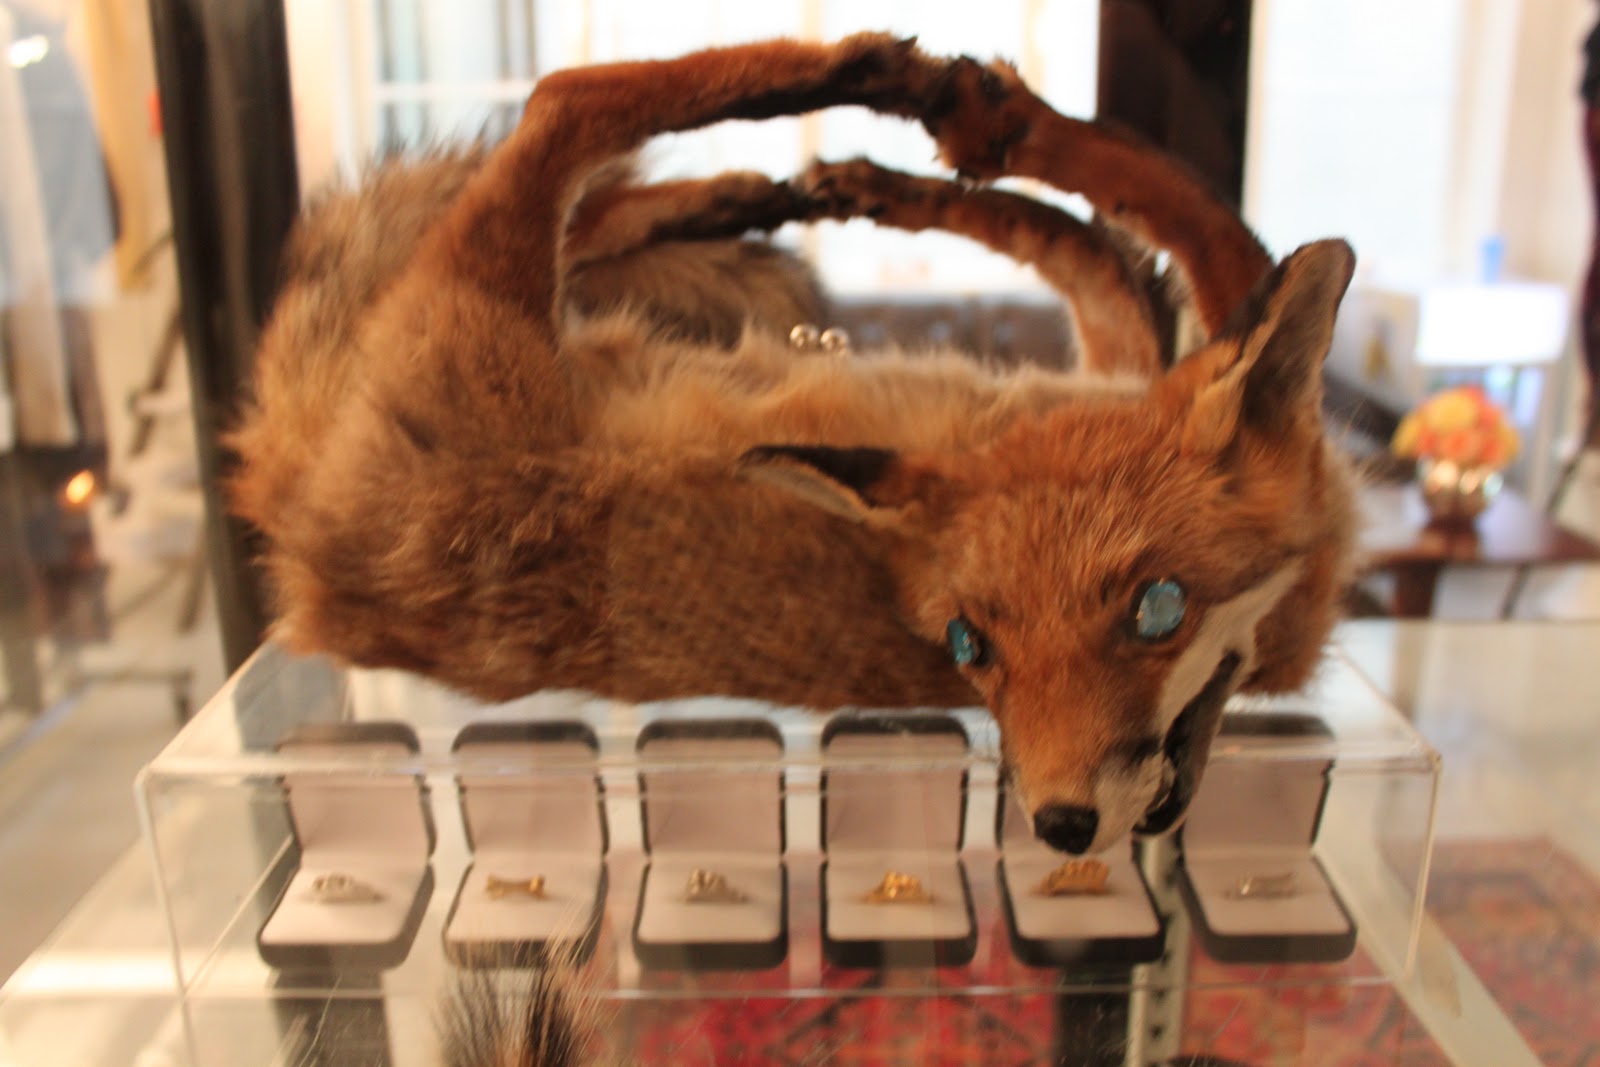 fox handbag